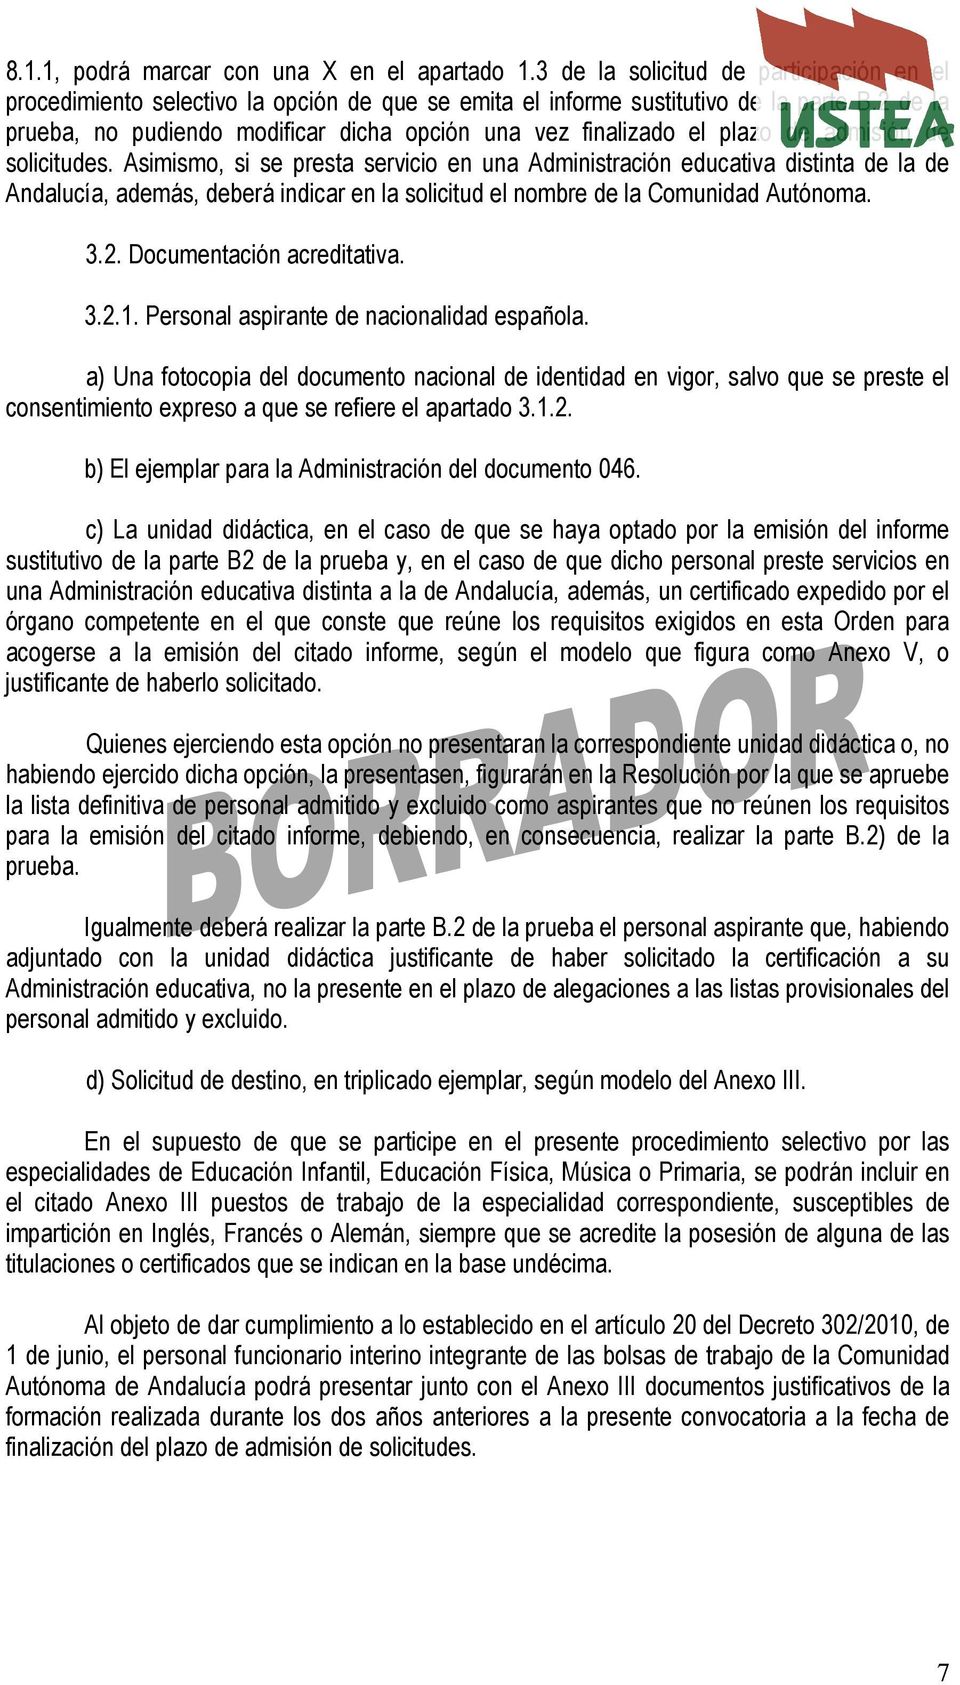 Asimismo, si se presta servicio en una Administración educativa distinta de la de Andalucía, además, deberá indicar en la solicitud el nombre de la Comunidad Autónoma. 3.2. Documentación acreditativa.